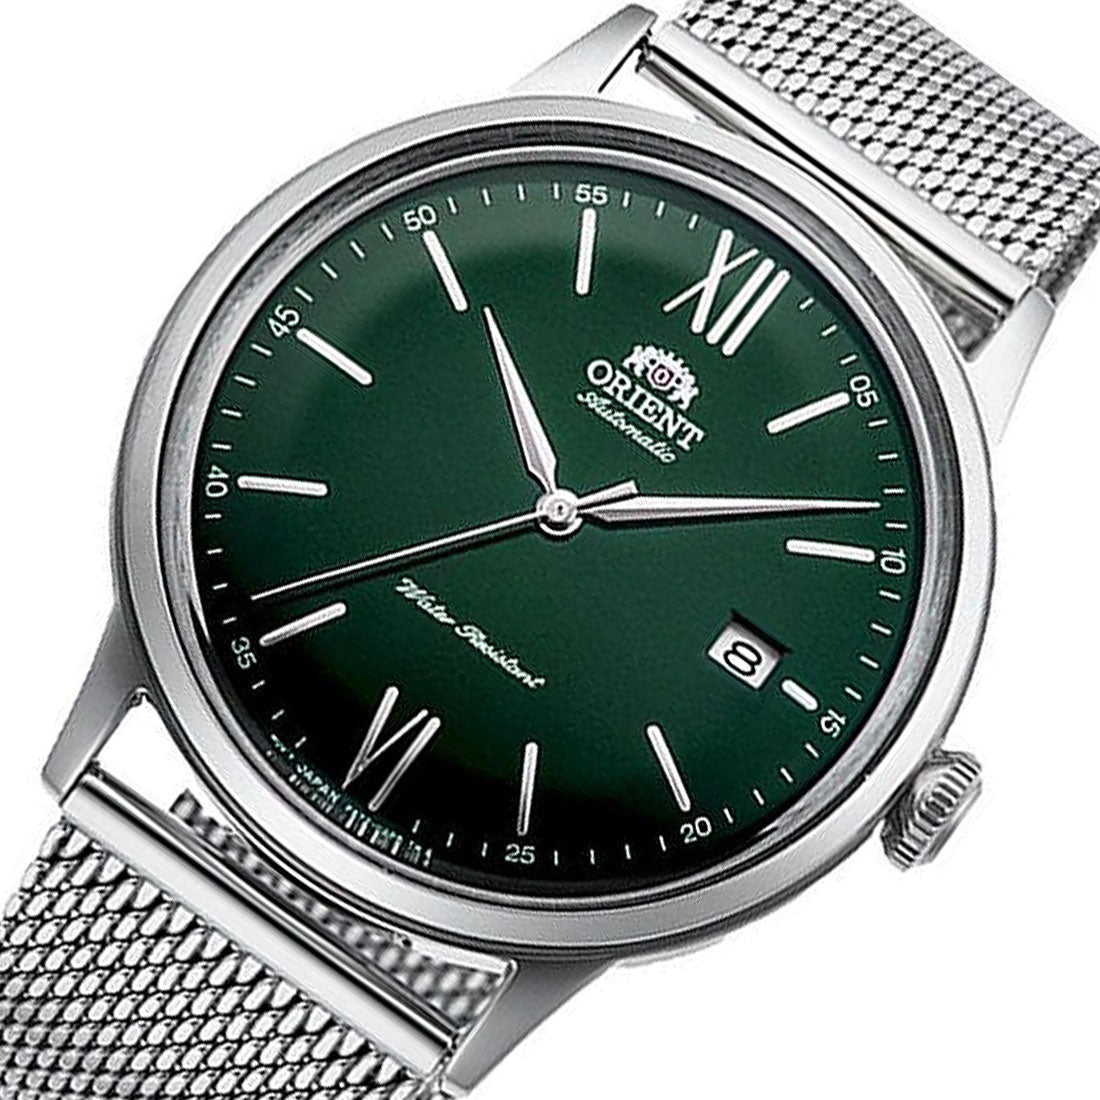 Orient Bambino Mesh Strap Green Dial RA-AC0018E10B RA-AC0018E Mechanical Watch -Orient